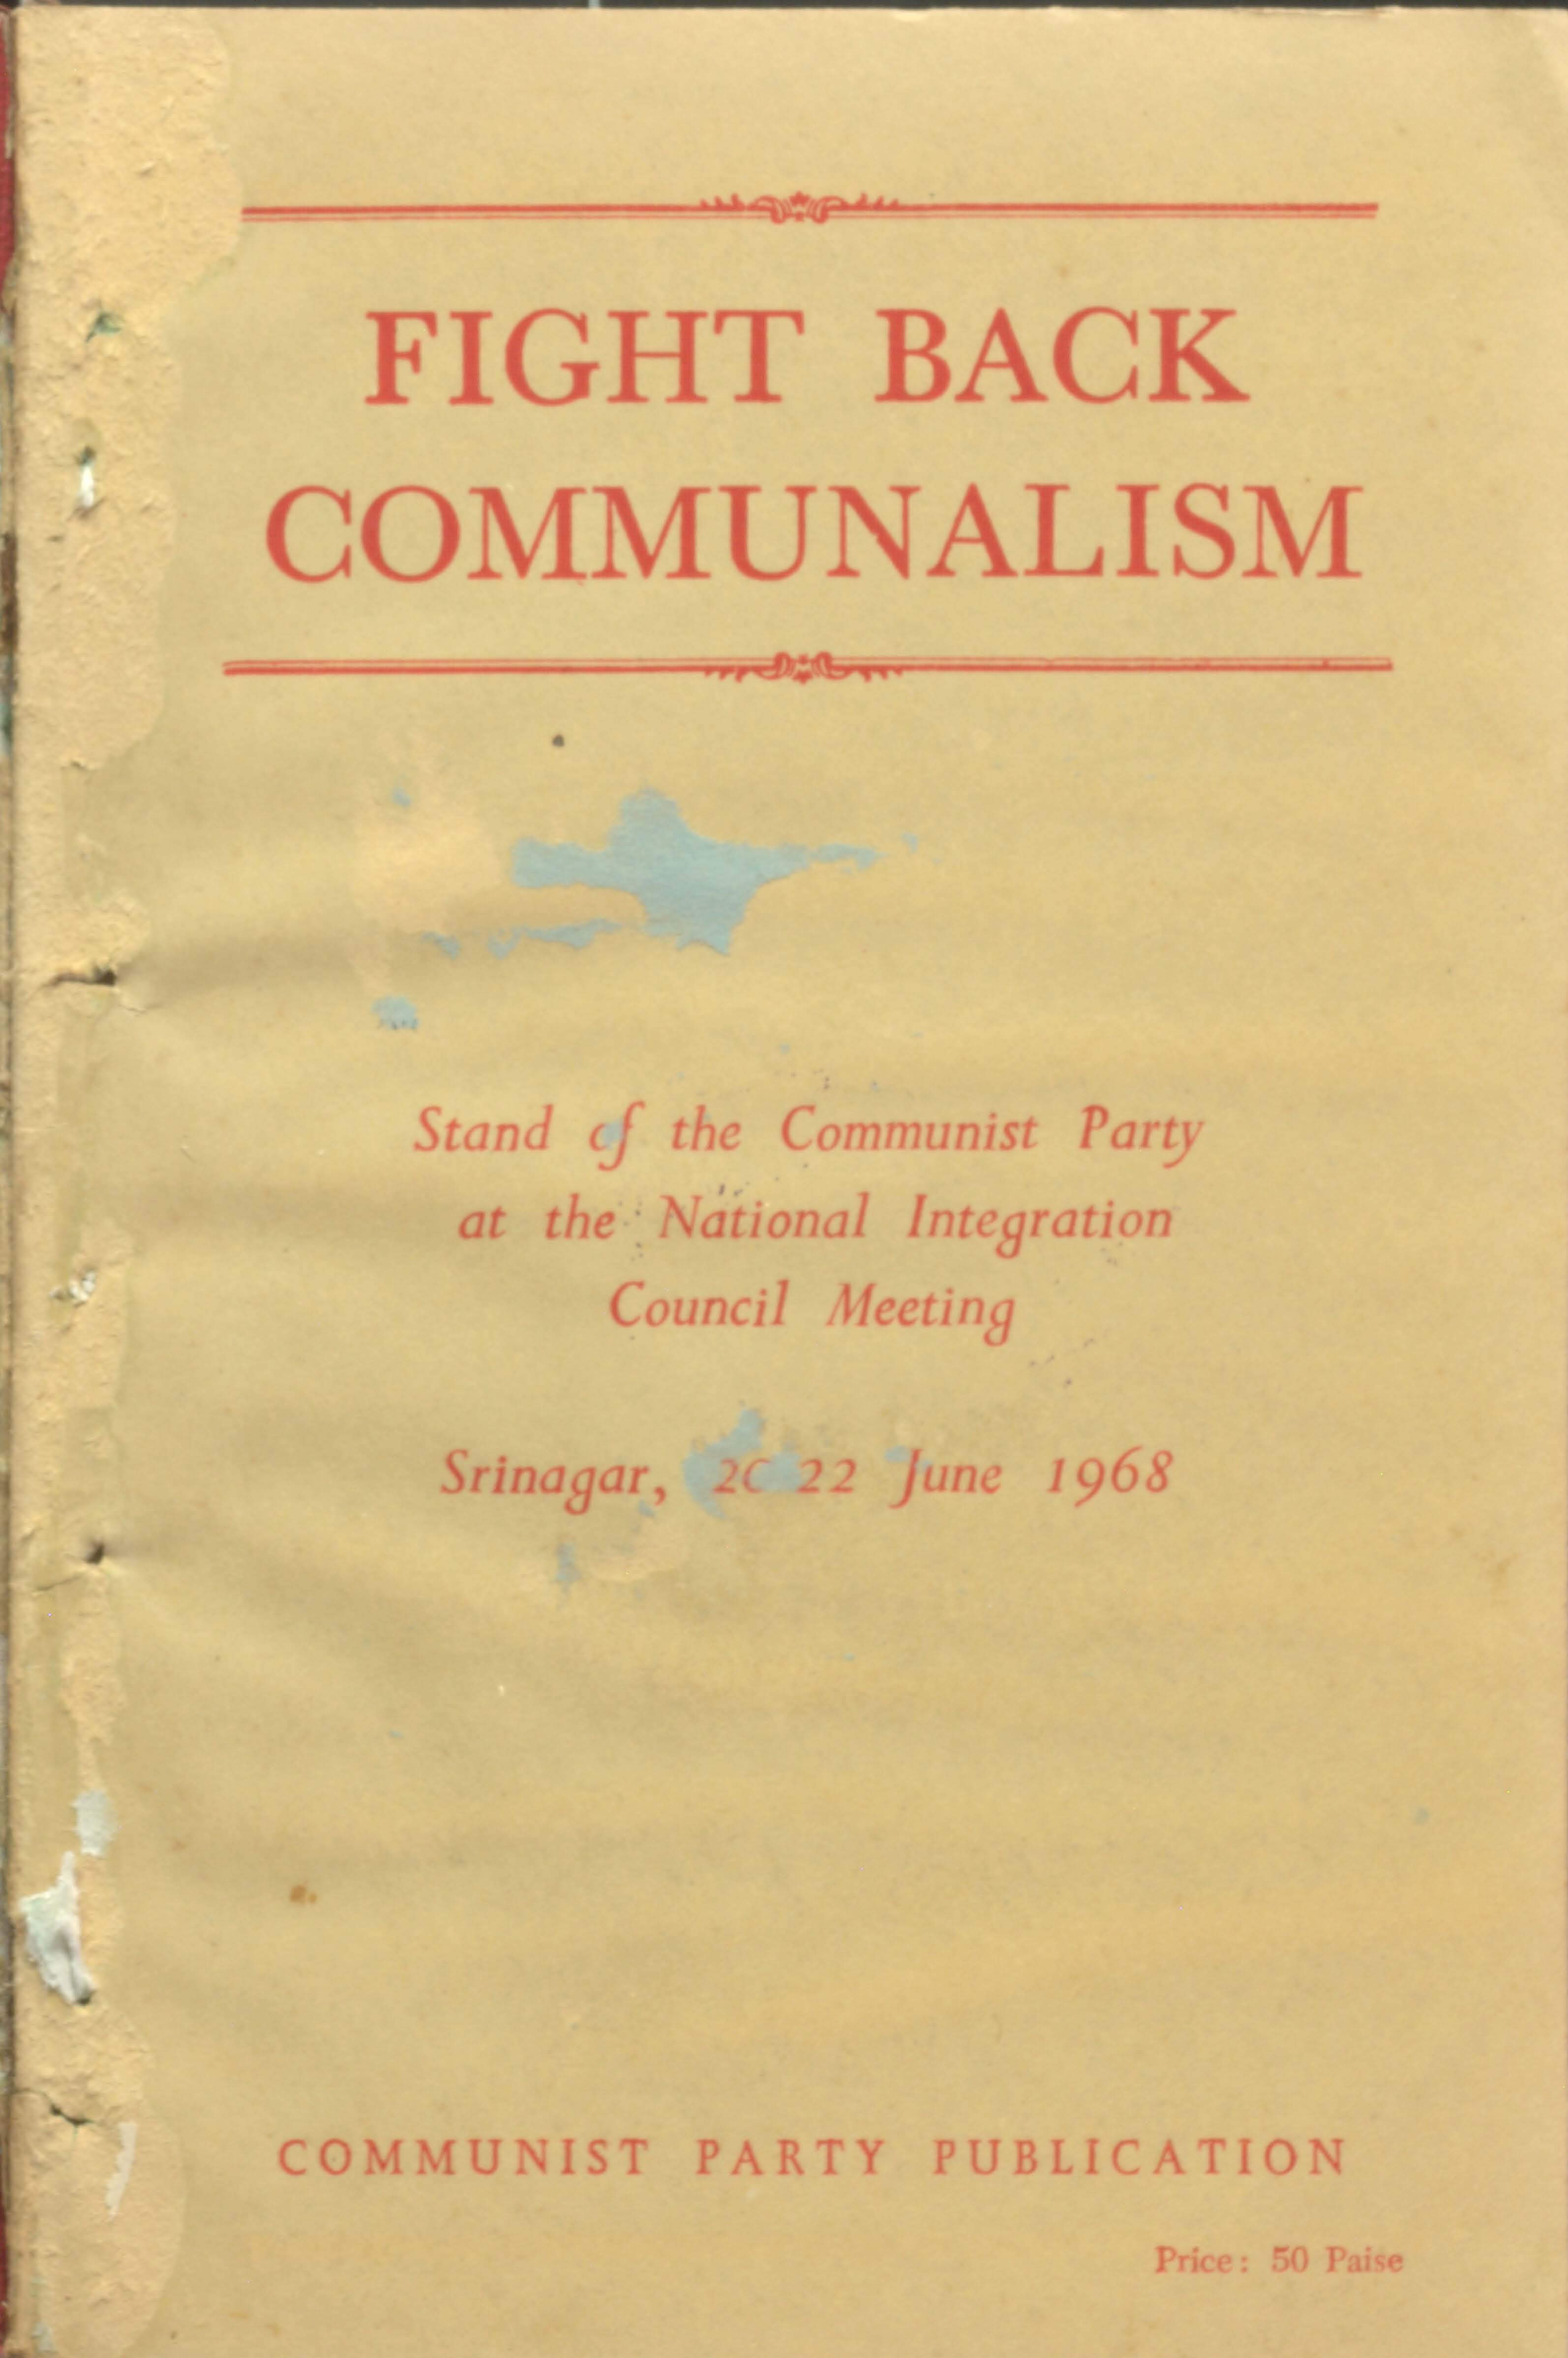 Fight Back Communalism (2022 JUNE 1968)